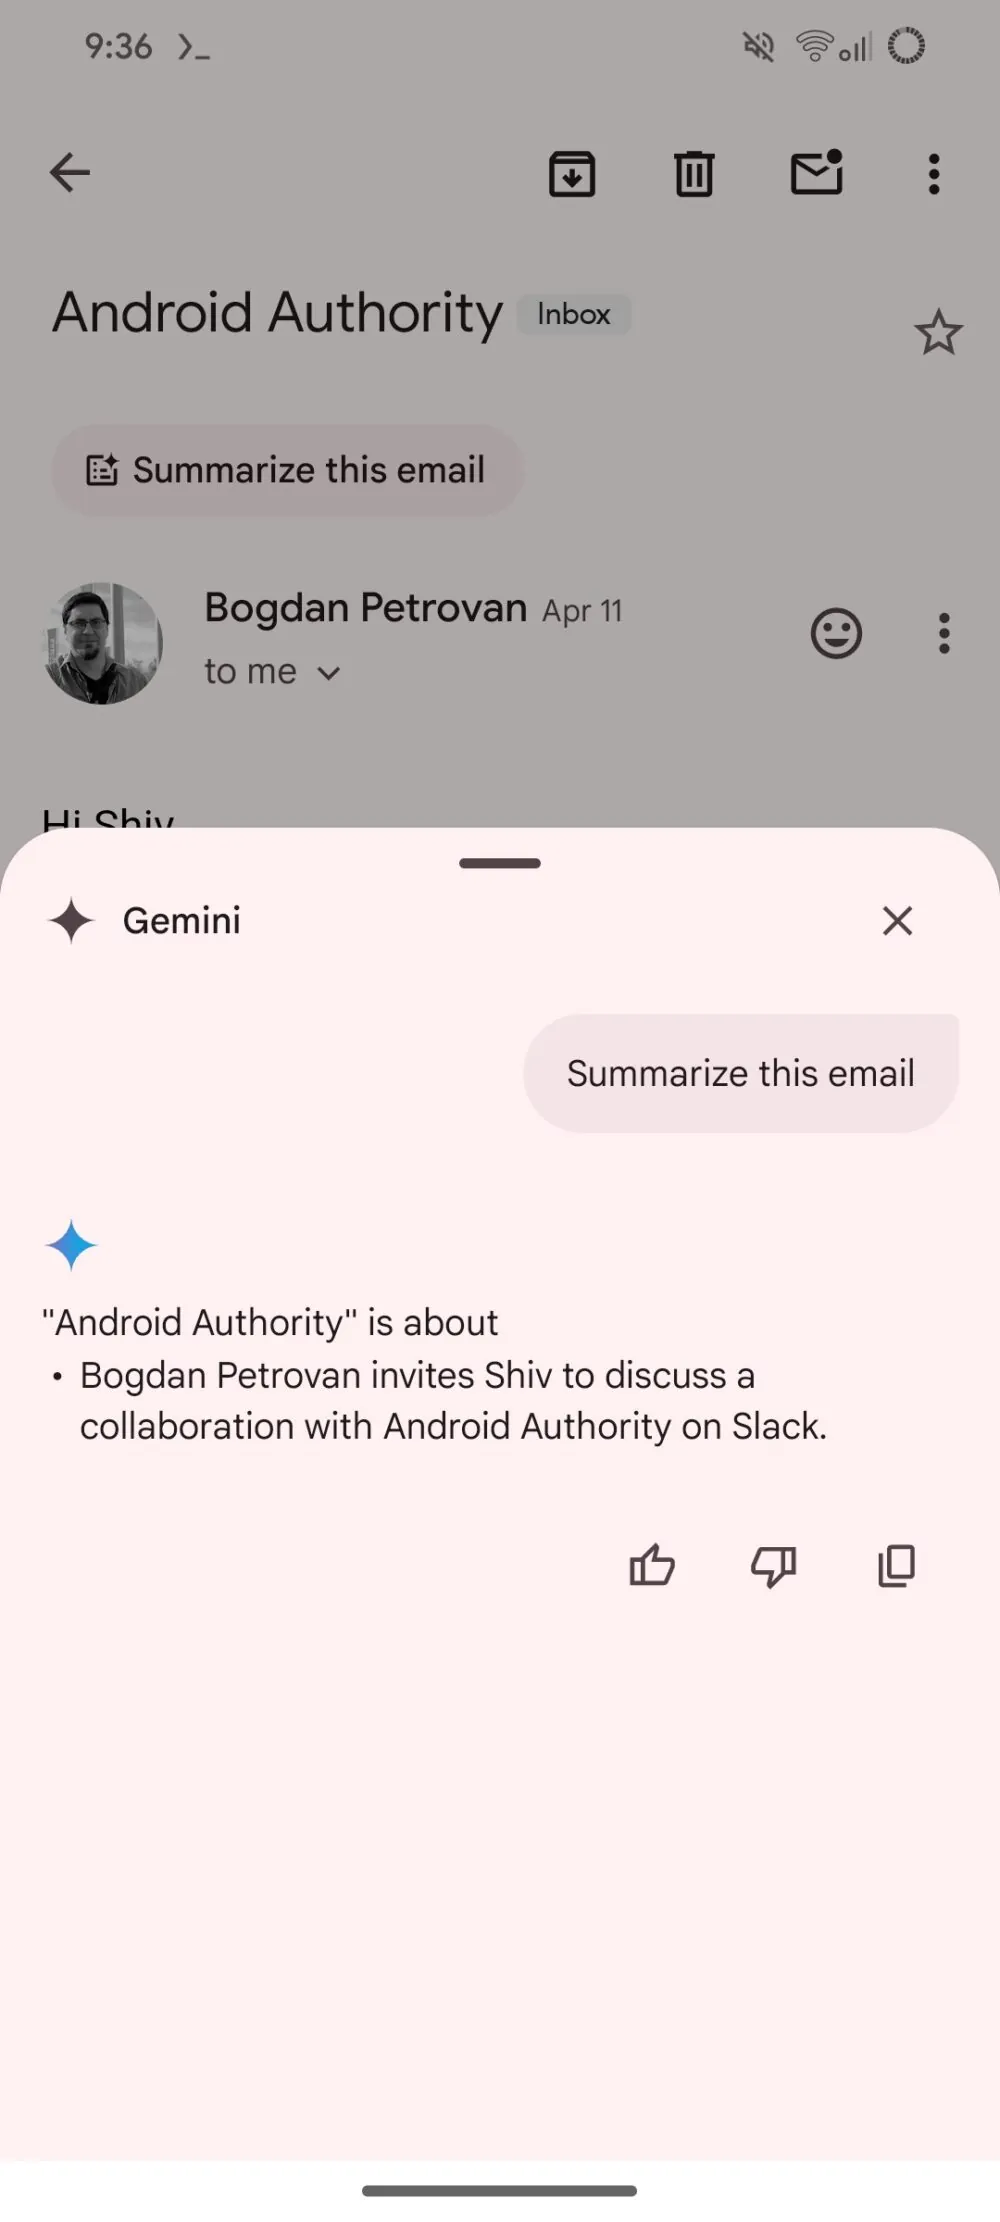 Recurso de resumo de e-mail do Gmail baseado no Gemini